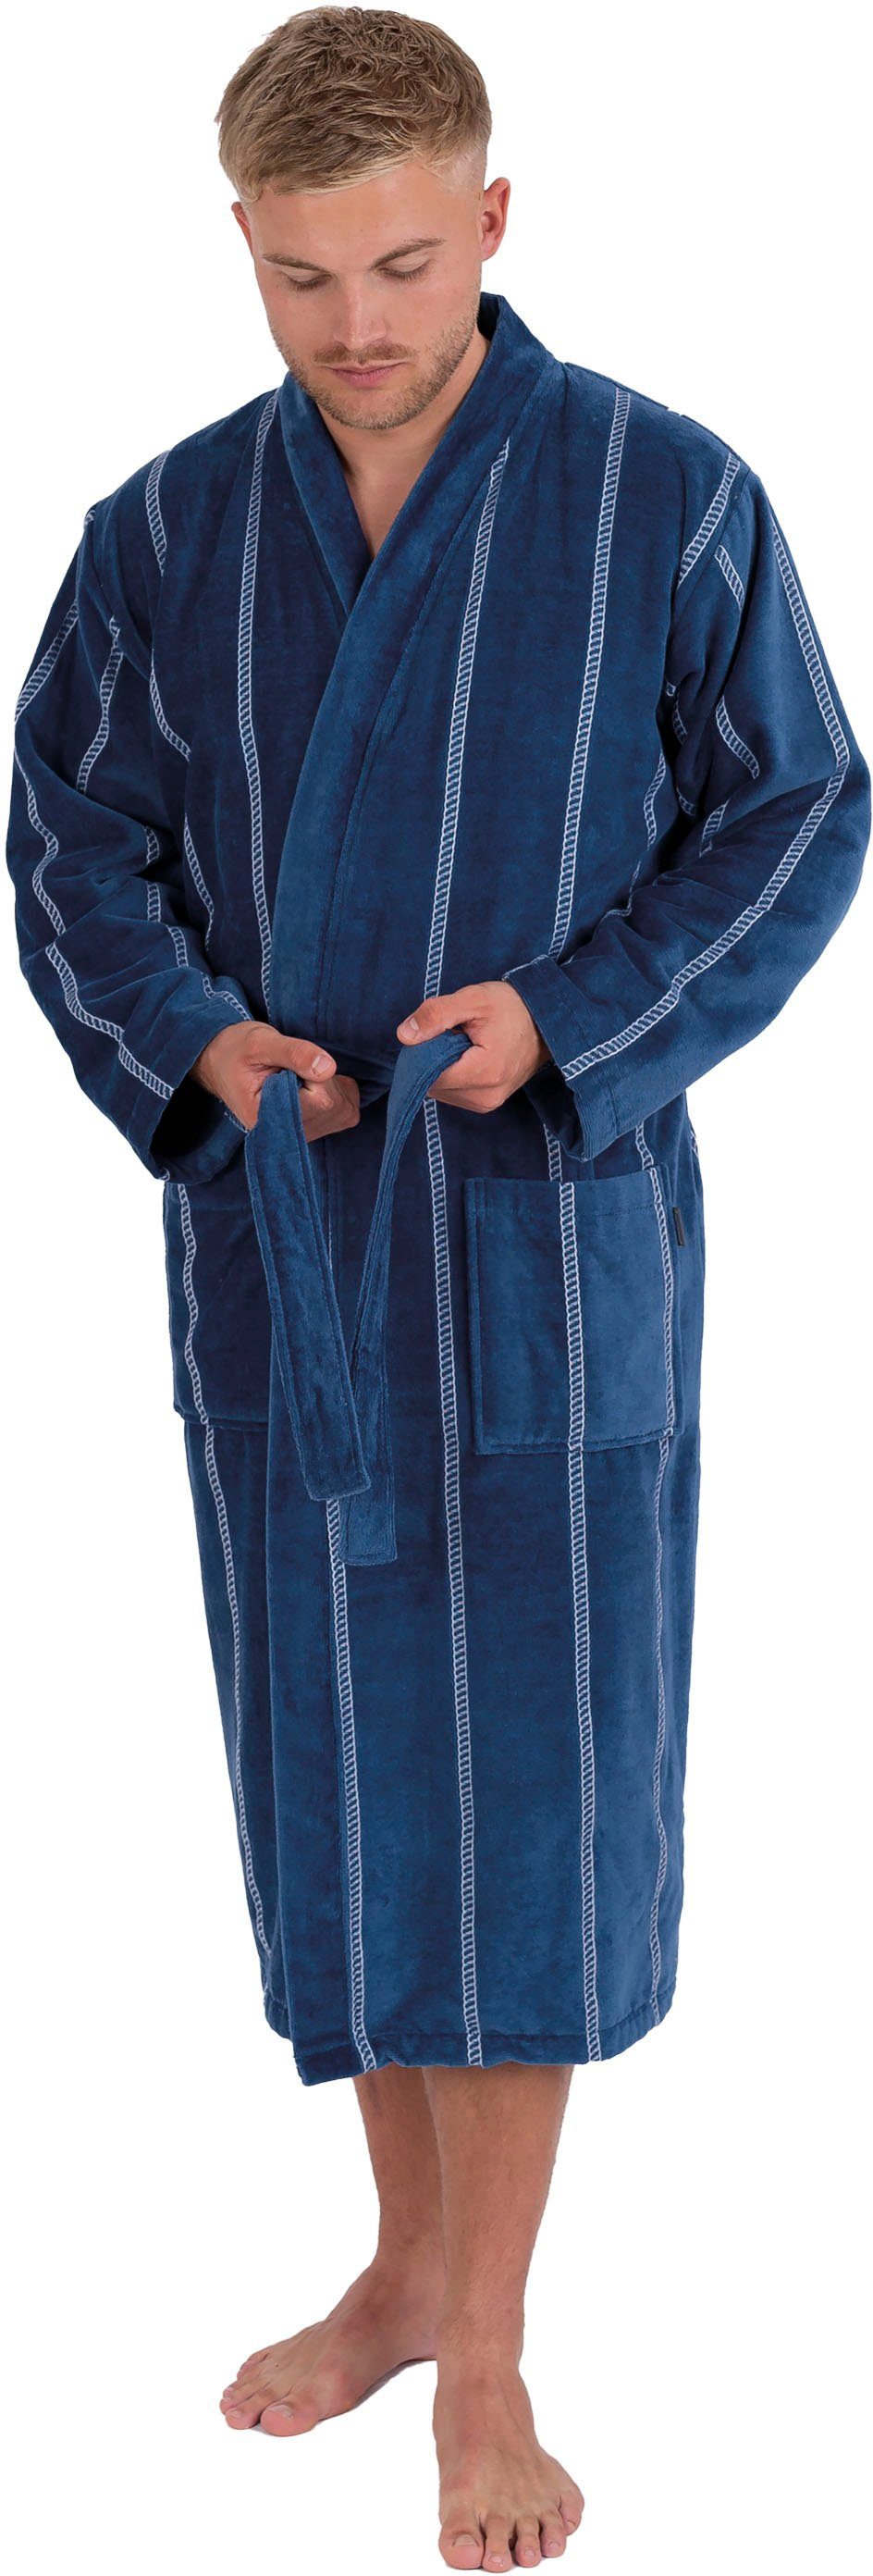 Wewo fashion Herrenbademantel 1607, Langform, dunkelblau Kimono-Kragen, mit Baumwolle, Gürtel, gestreift, Kimono-Kragen, lang